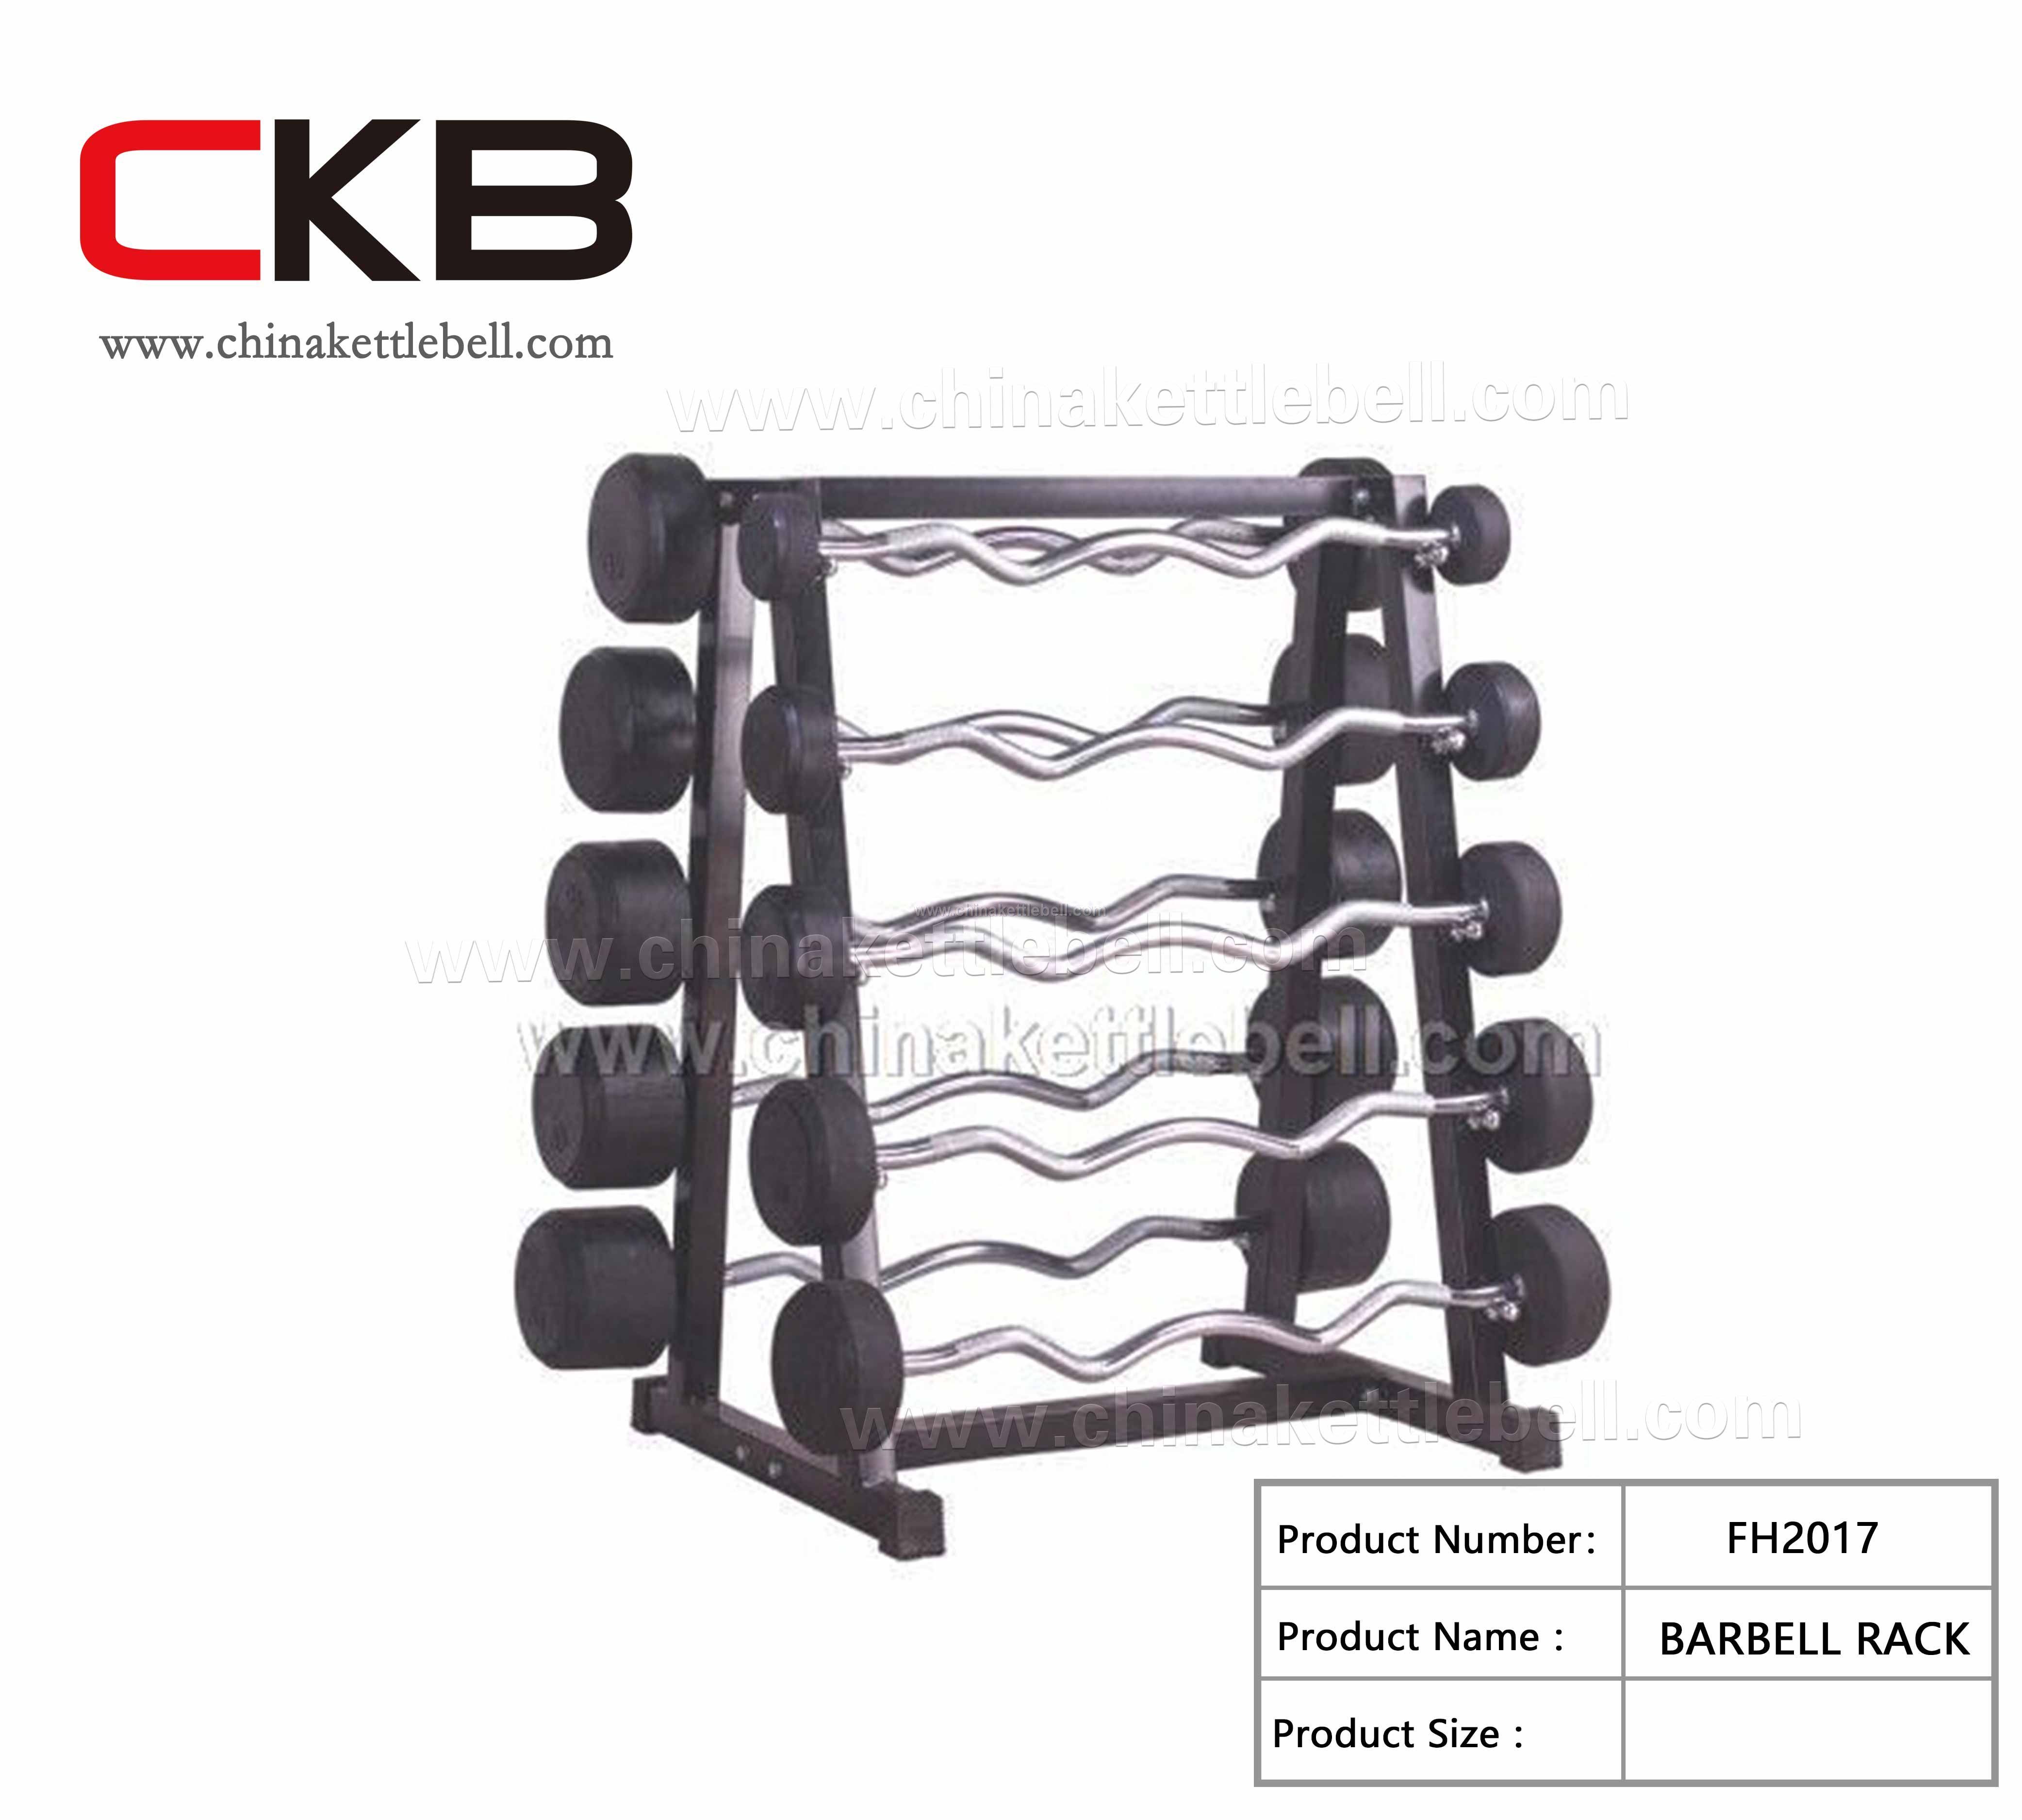 Barbell rack